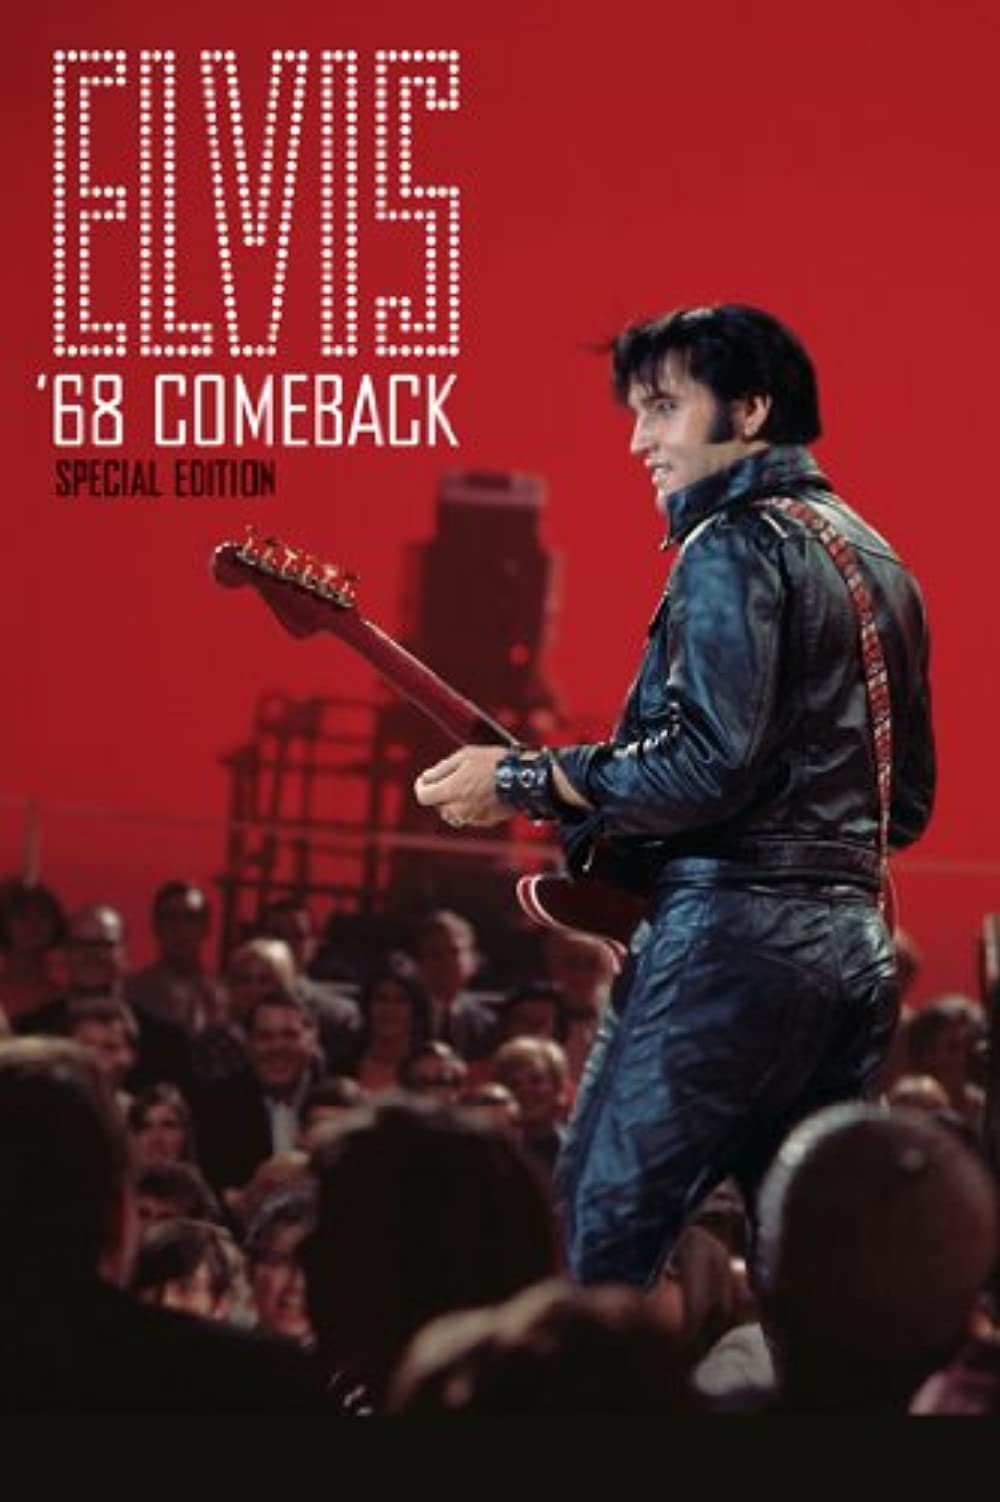 Filmbeschreibung zu Elvis Presley's '68 Comeback Special